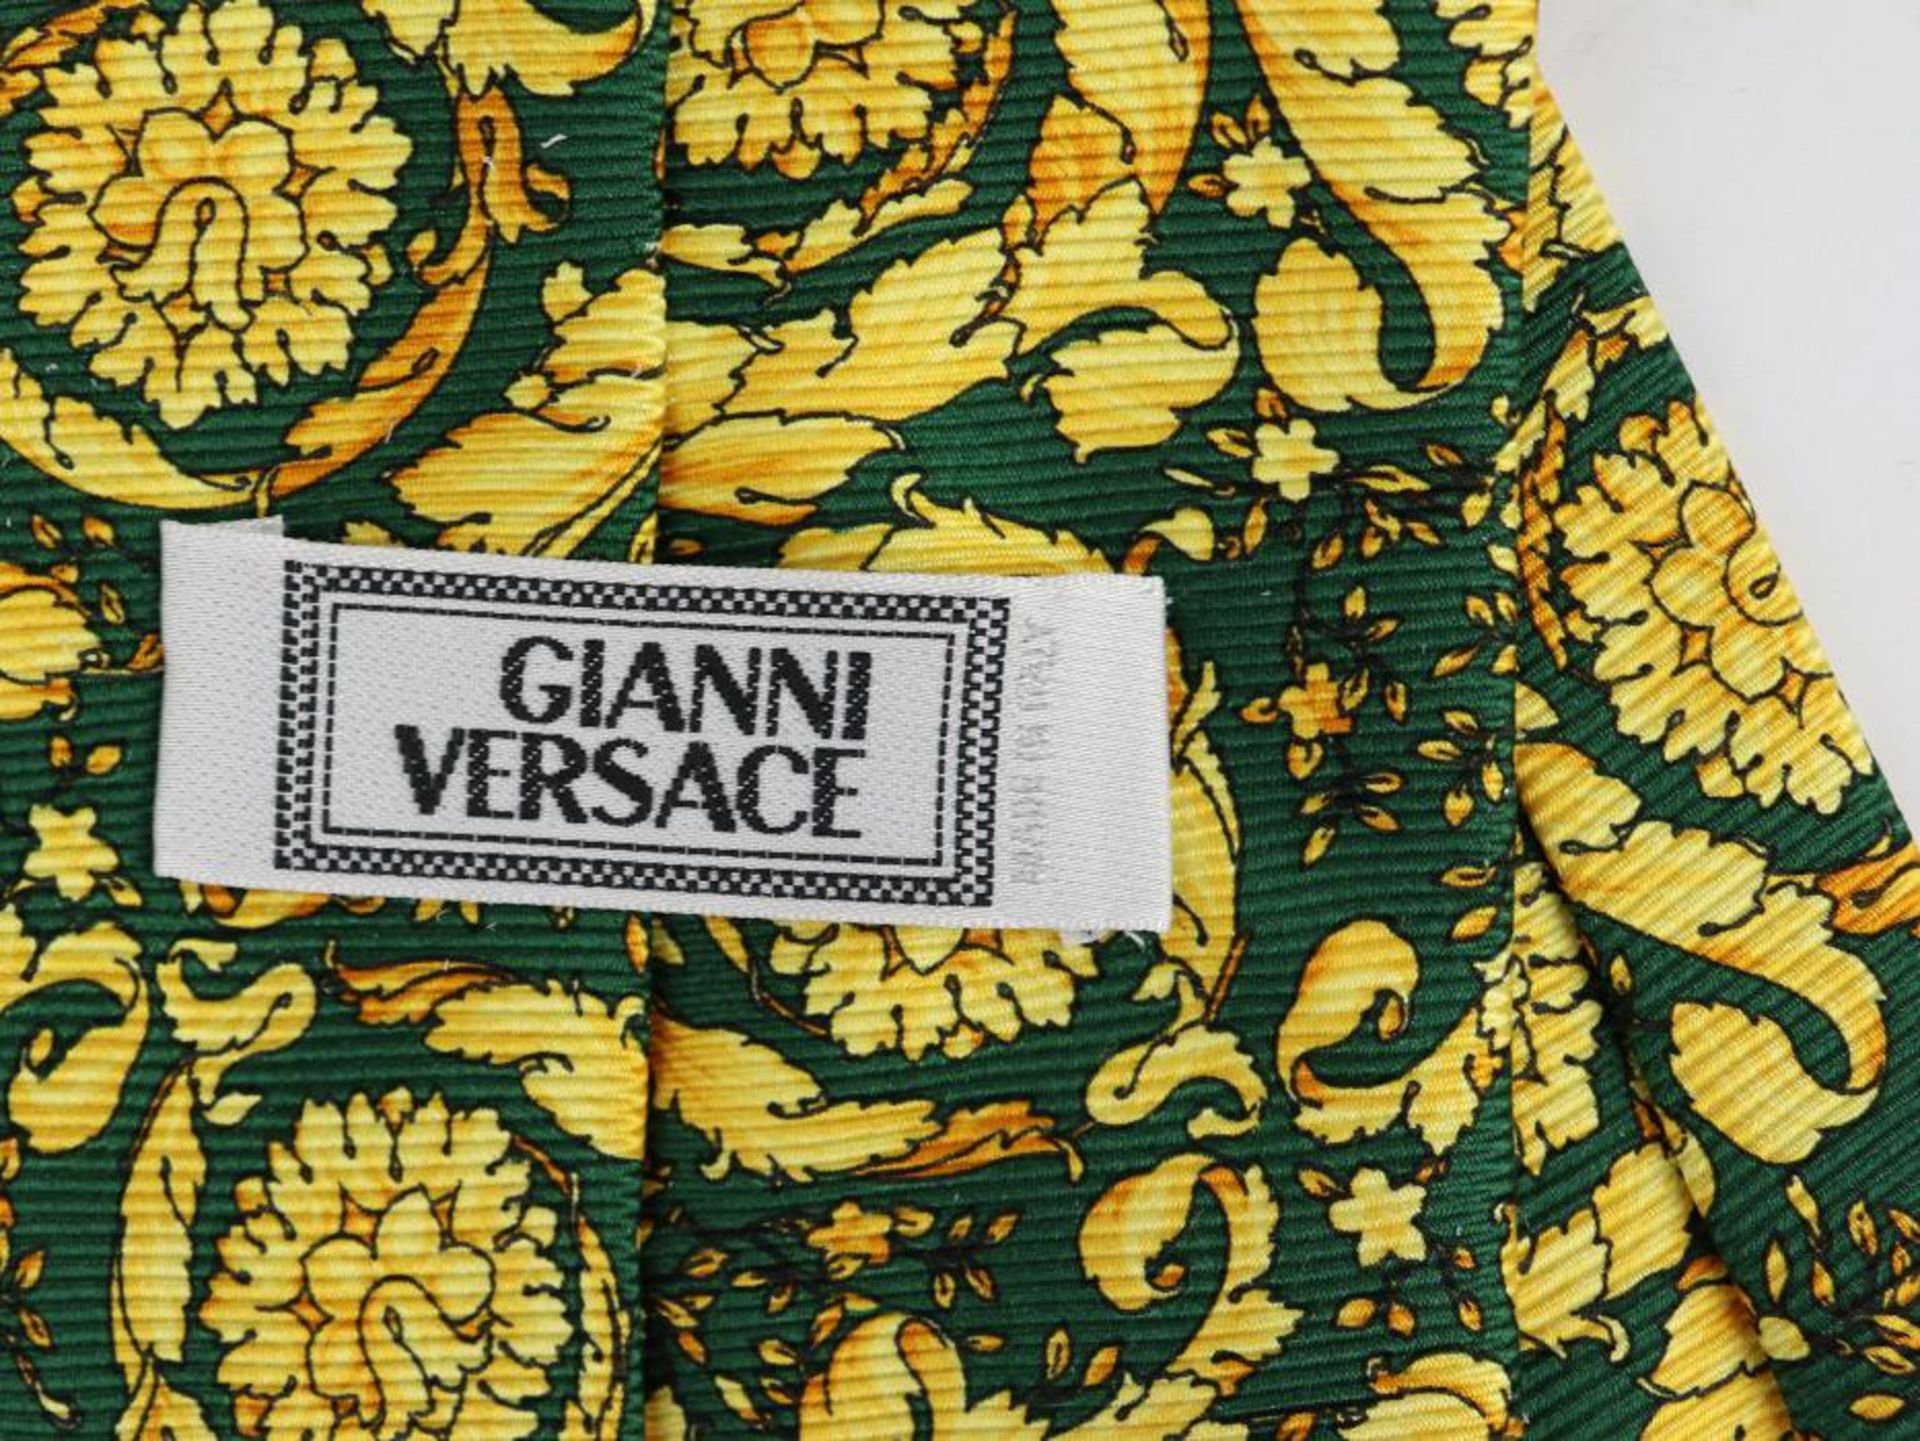 Versace - KrawatteGianni Versace, 100 % Seide, grün, gold, gerollte Akanthusmotive, min. Alterssp. - Bild 2 aus 2